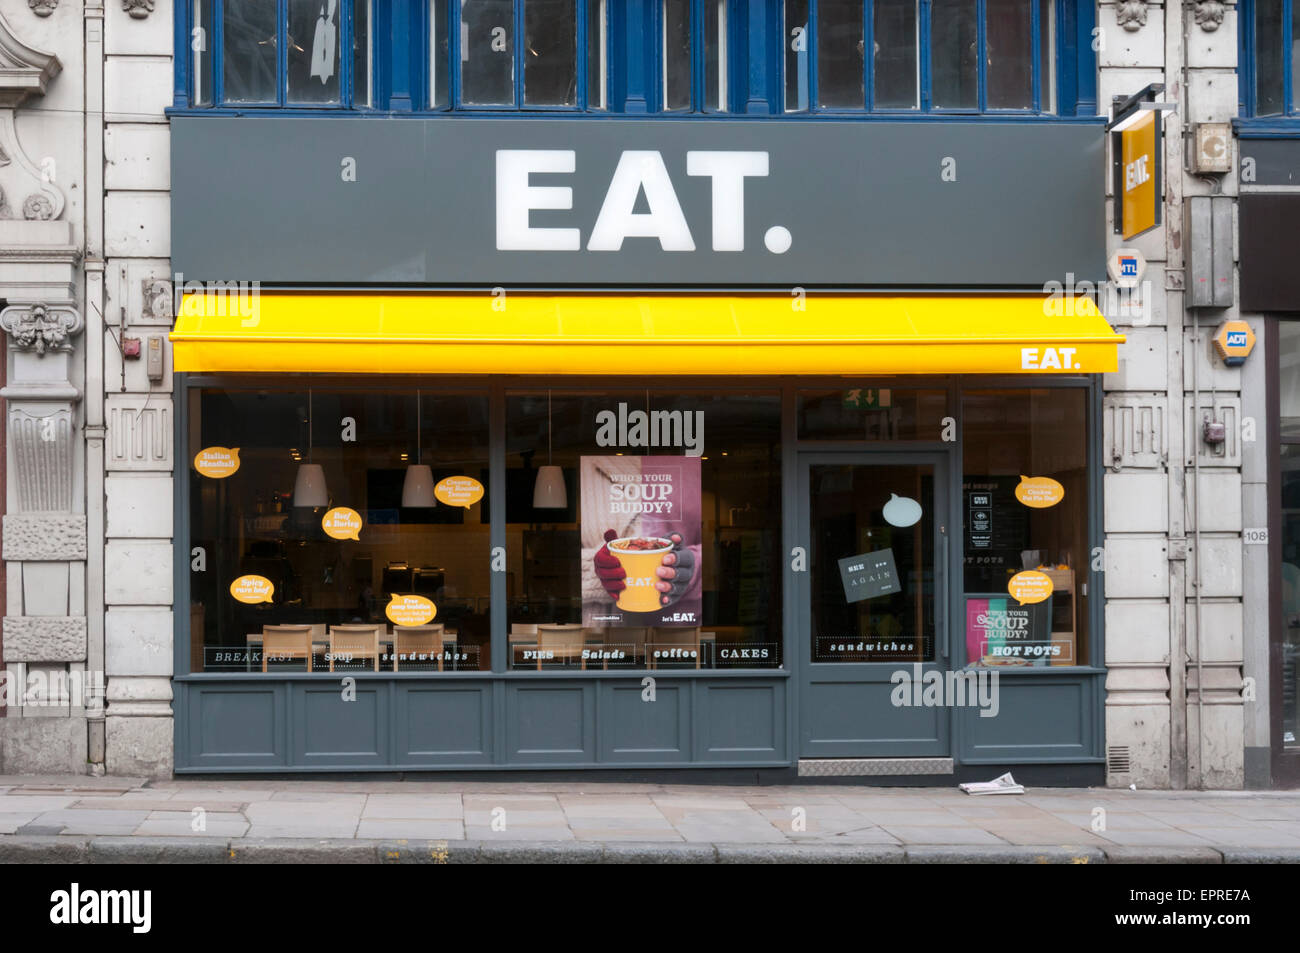 Branch of Eat sandwich shop in Fleet Street, London. Stock Photo